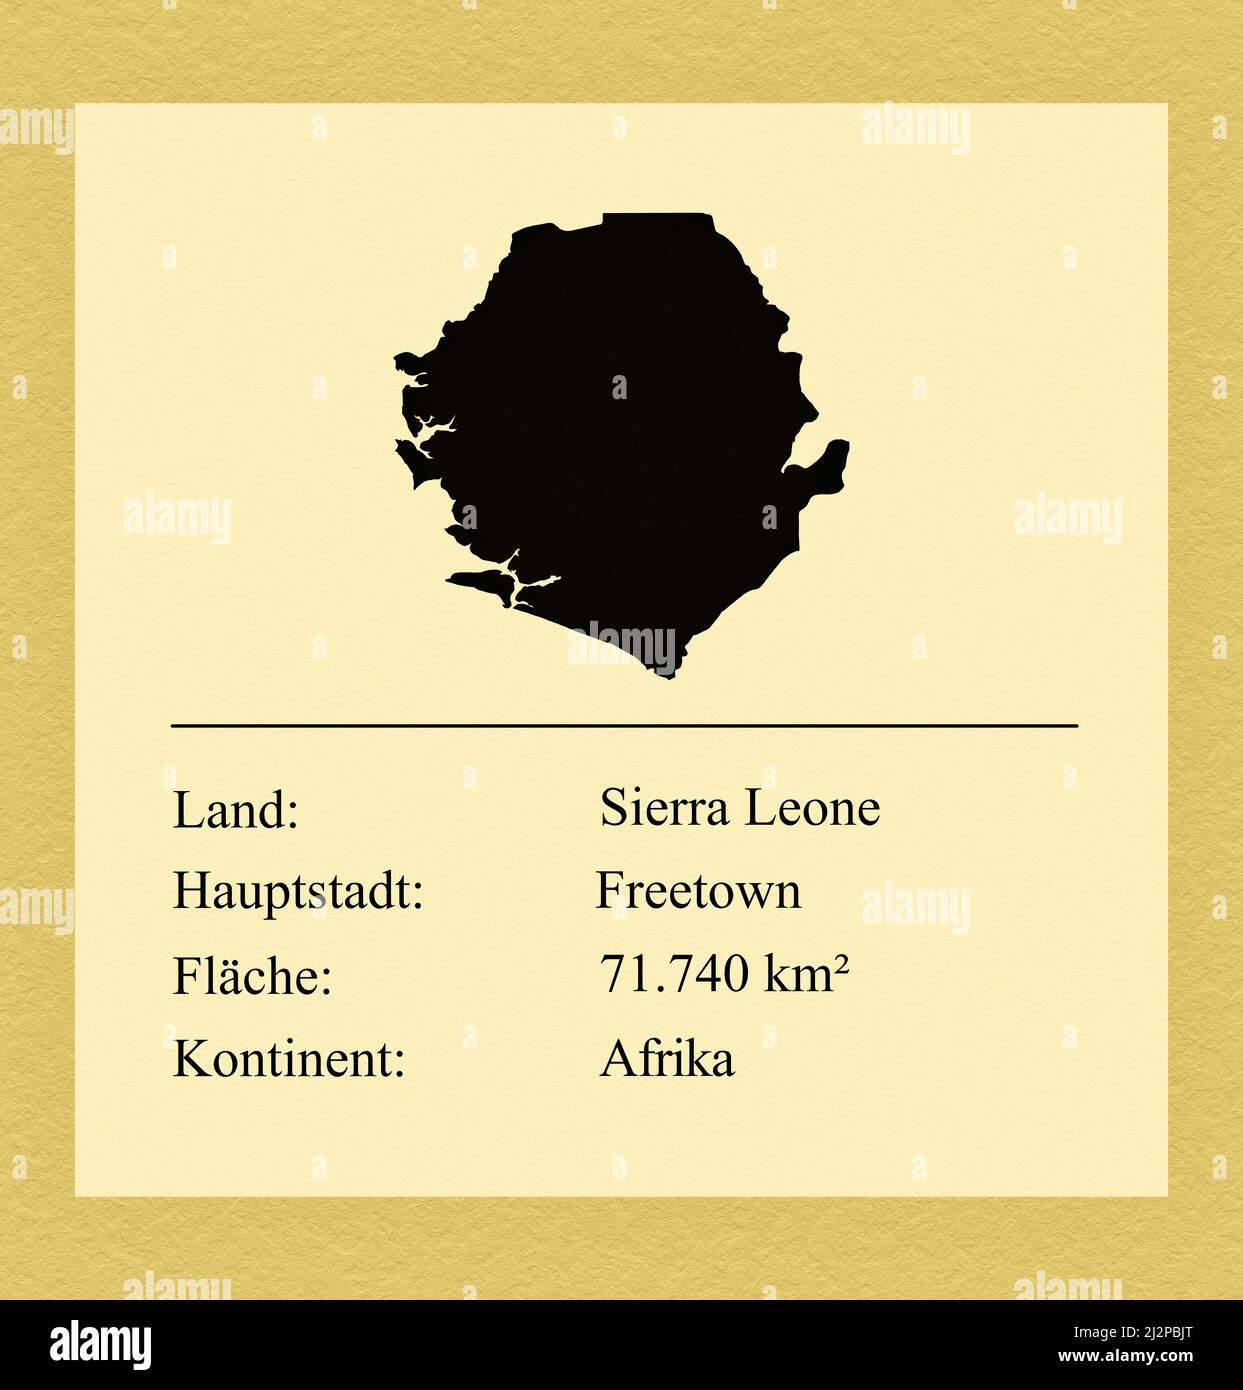 Umrisse des Landes Sierra Leone, darunter ein kleiner Steckbrief mit Ländernamen, Hauptstadt, Fläche und Kontinent Stock Photo